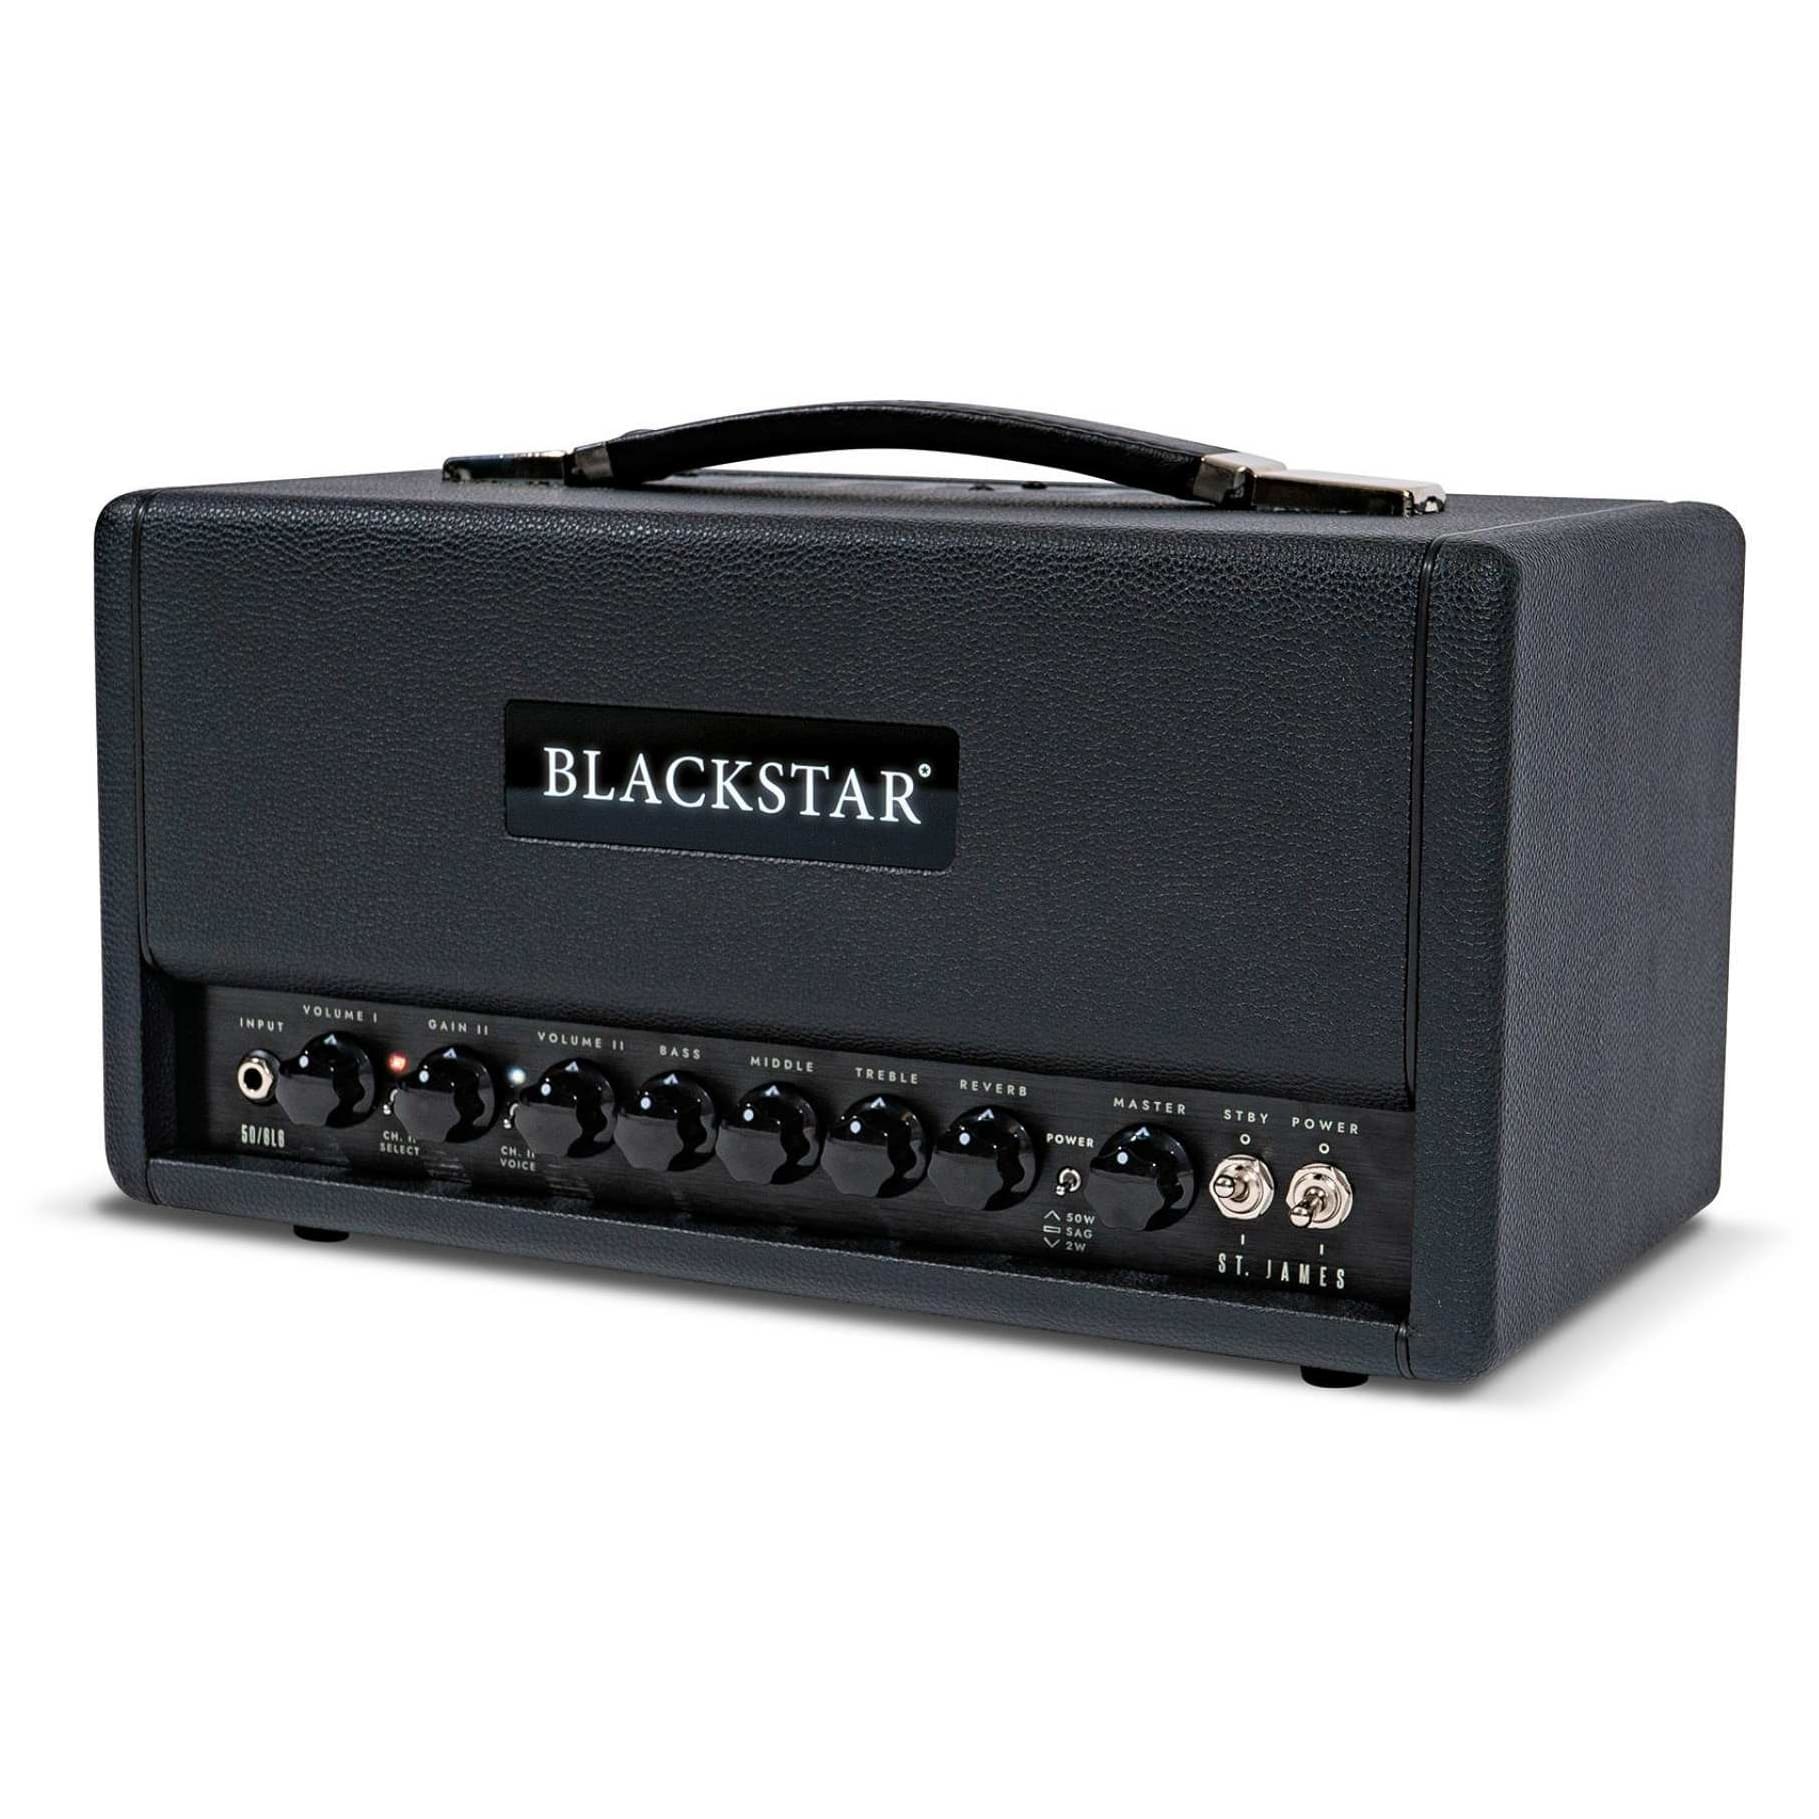 Blackstar ST. James 50 6L6 Head Black